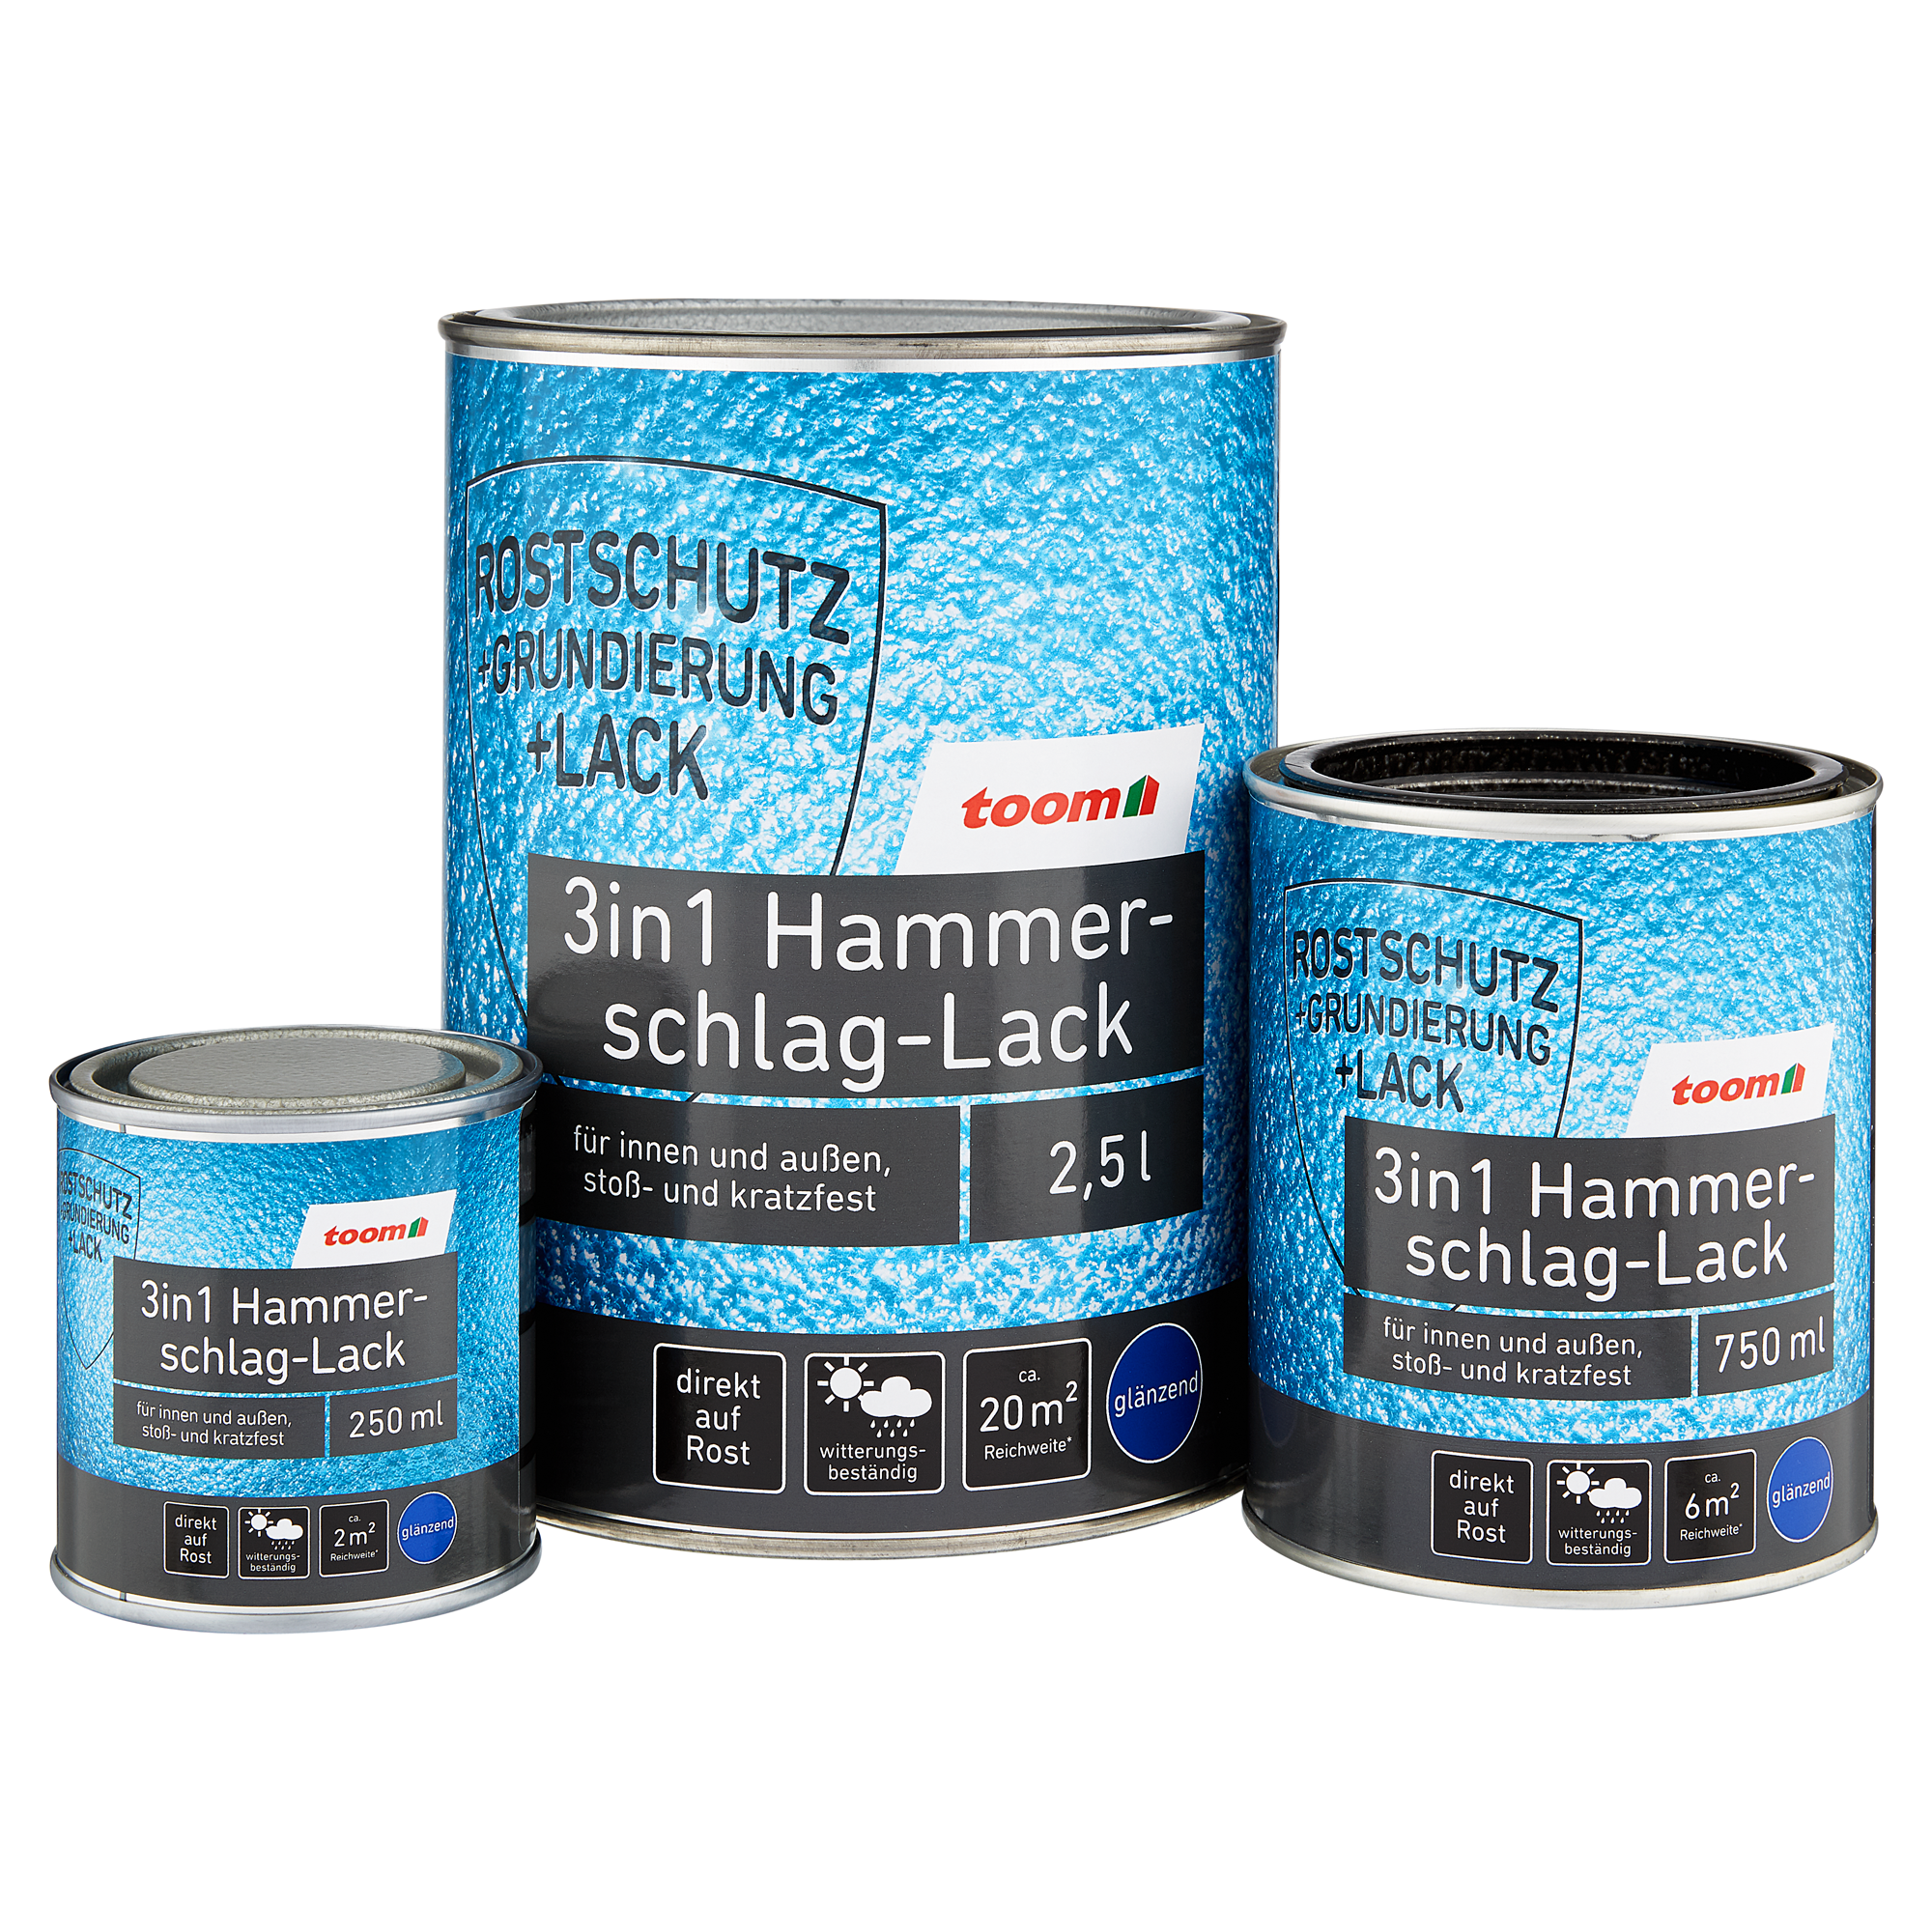 3in1 Hammerschlag-Lack dunkelblau glänzend 750 ml + product picture